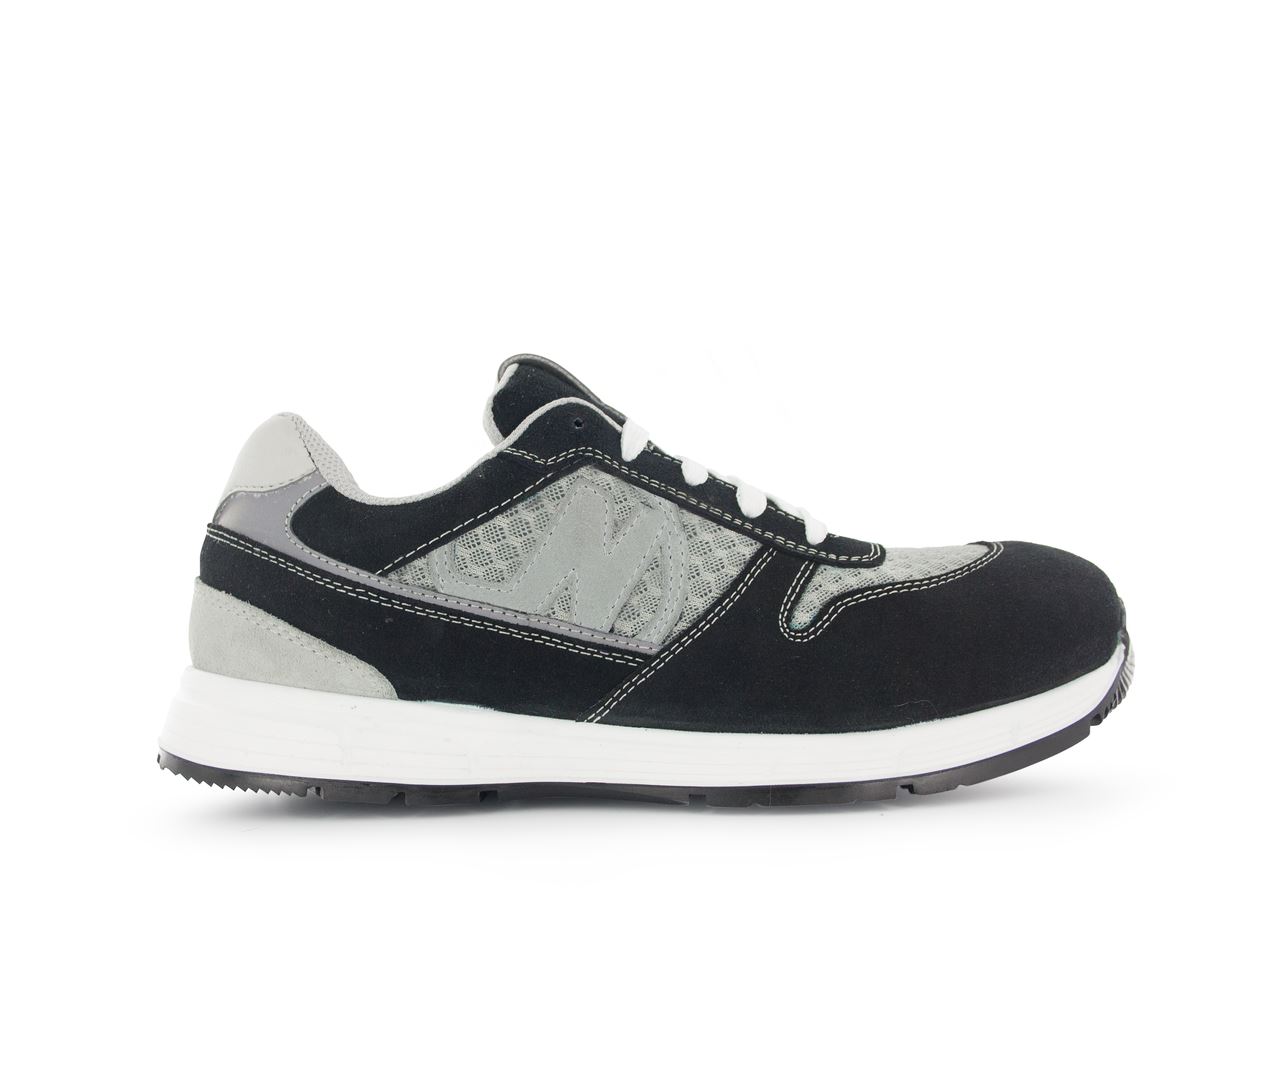 Chaussure de sécurité noir/gris Run Soft T.38 - Nord'Ways - RUN000238000NOGR